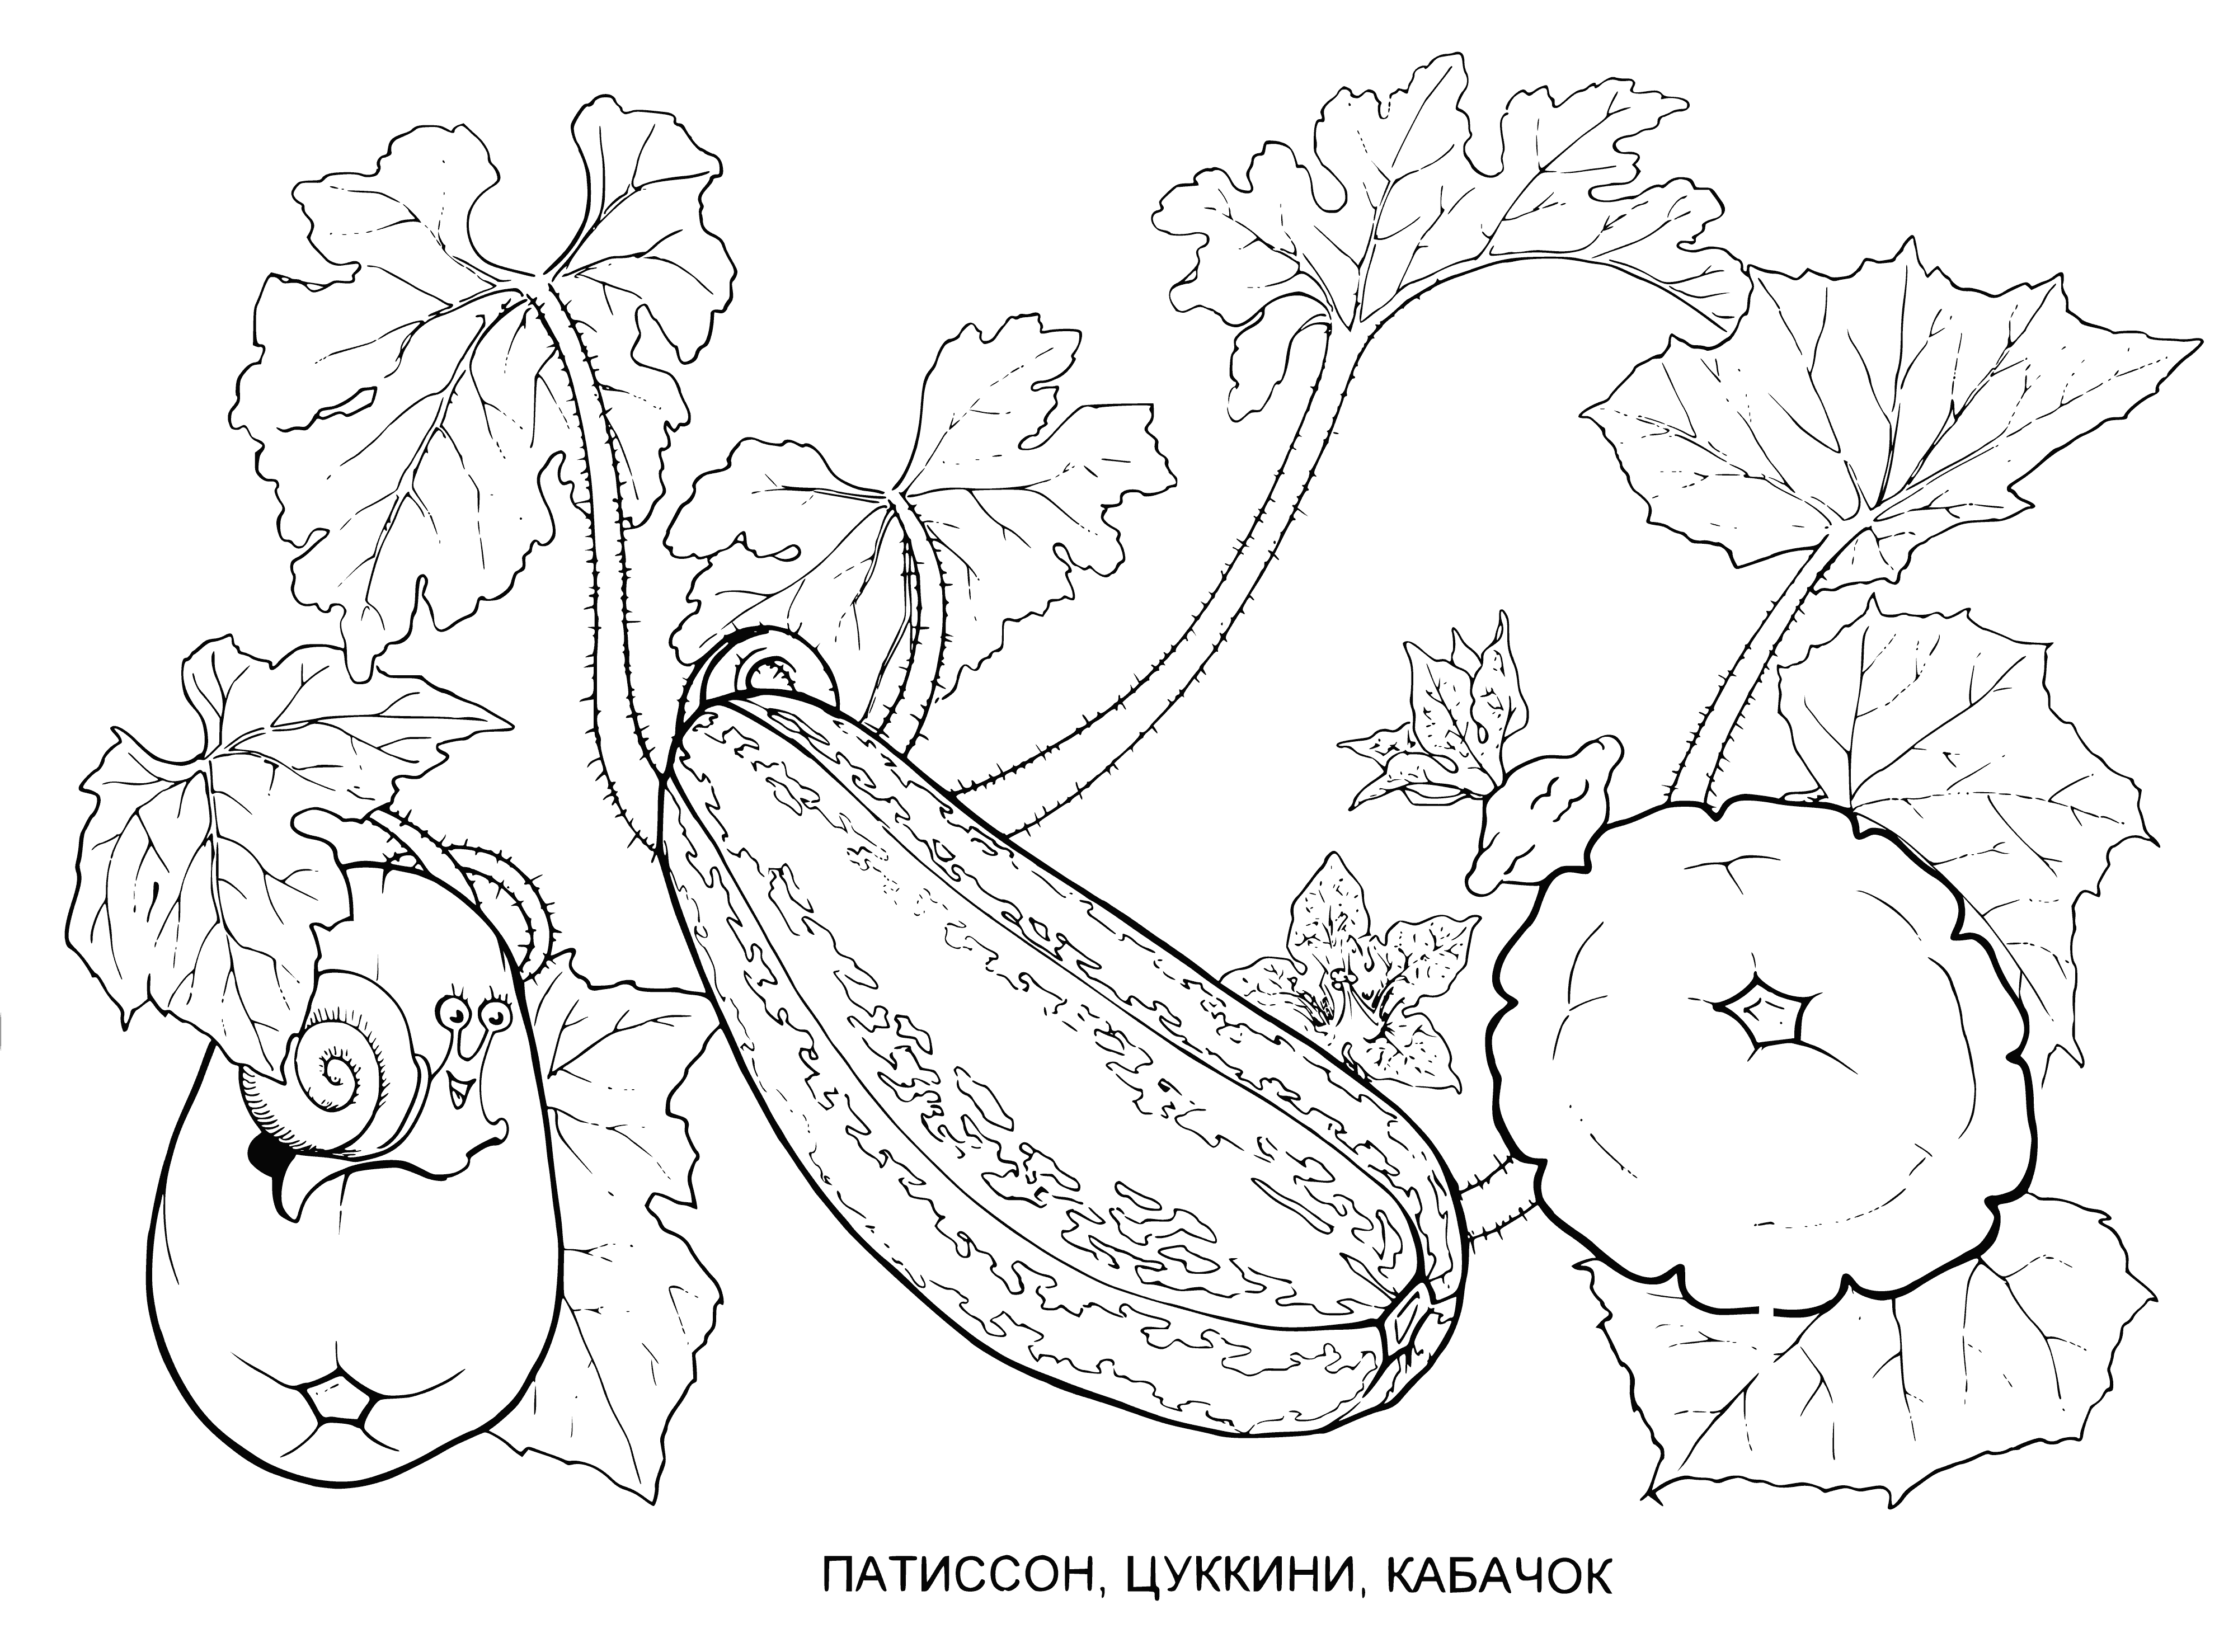 Patisson, zucchini, zucchini coloring page